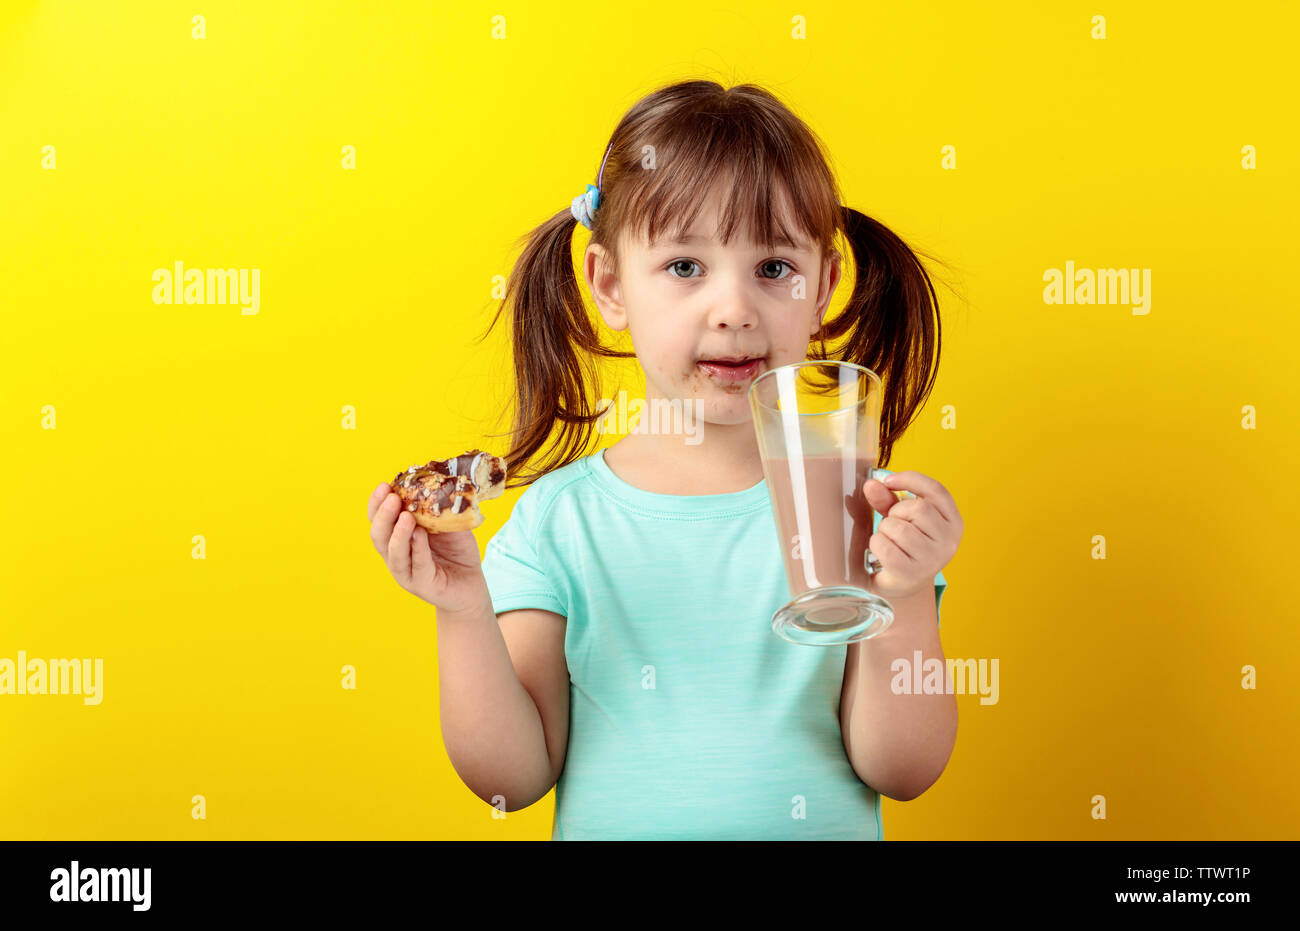 Kleines Mädchen in einem Türkis t-shirt Donuts essen und trinken Kakao. Die Haare des Mädchens ist in Schwänze gebunden. Gelber Hintergrund. Stockfoto